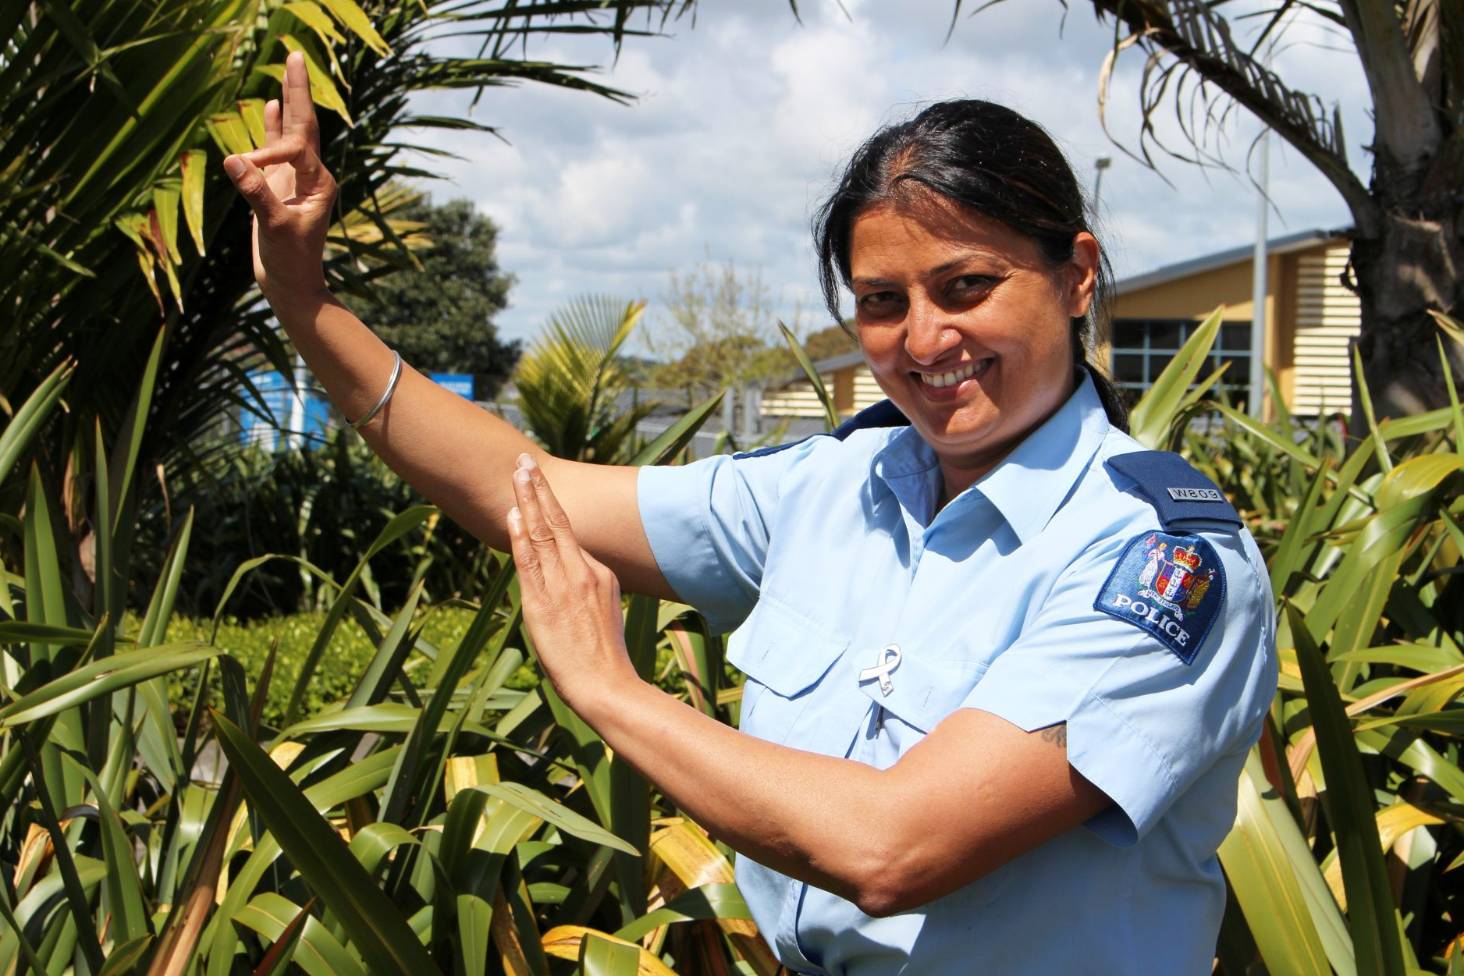 Mandeep Kaur : Single mom who rose from door-to-door sales to NZ’s first female Indian-origin cop